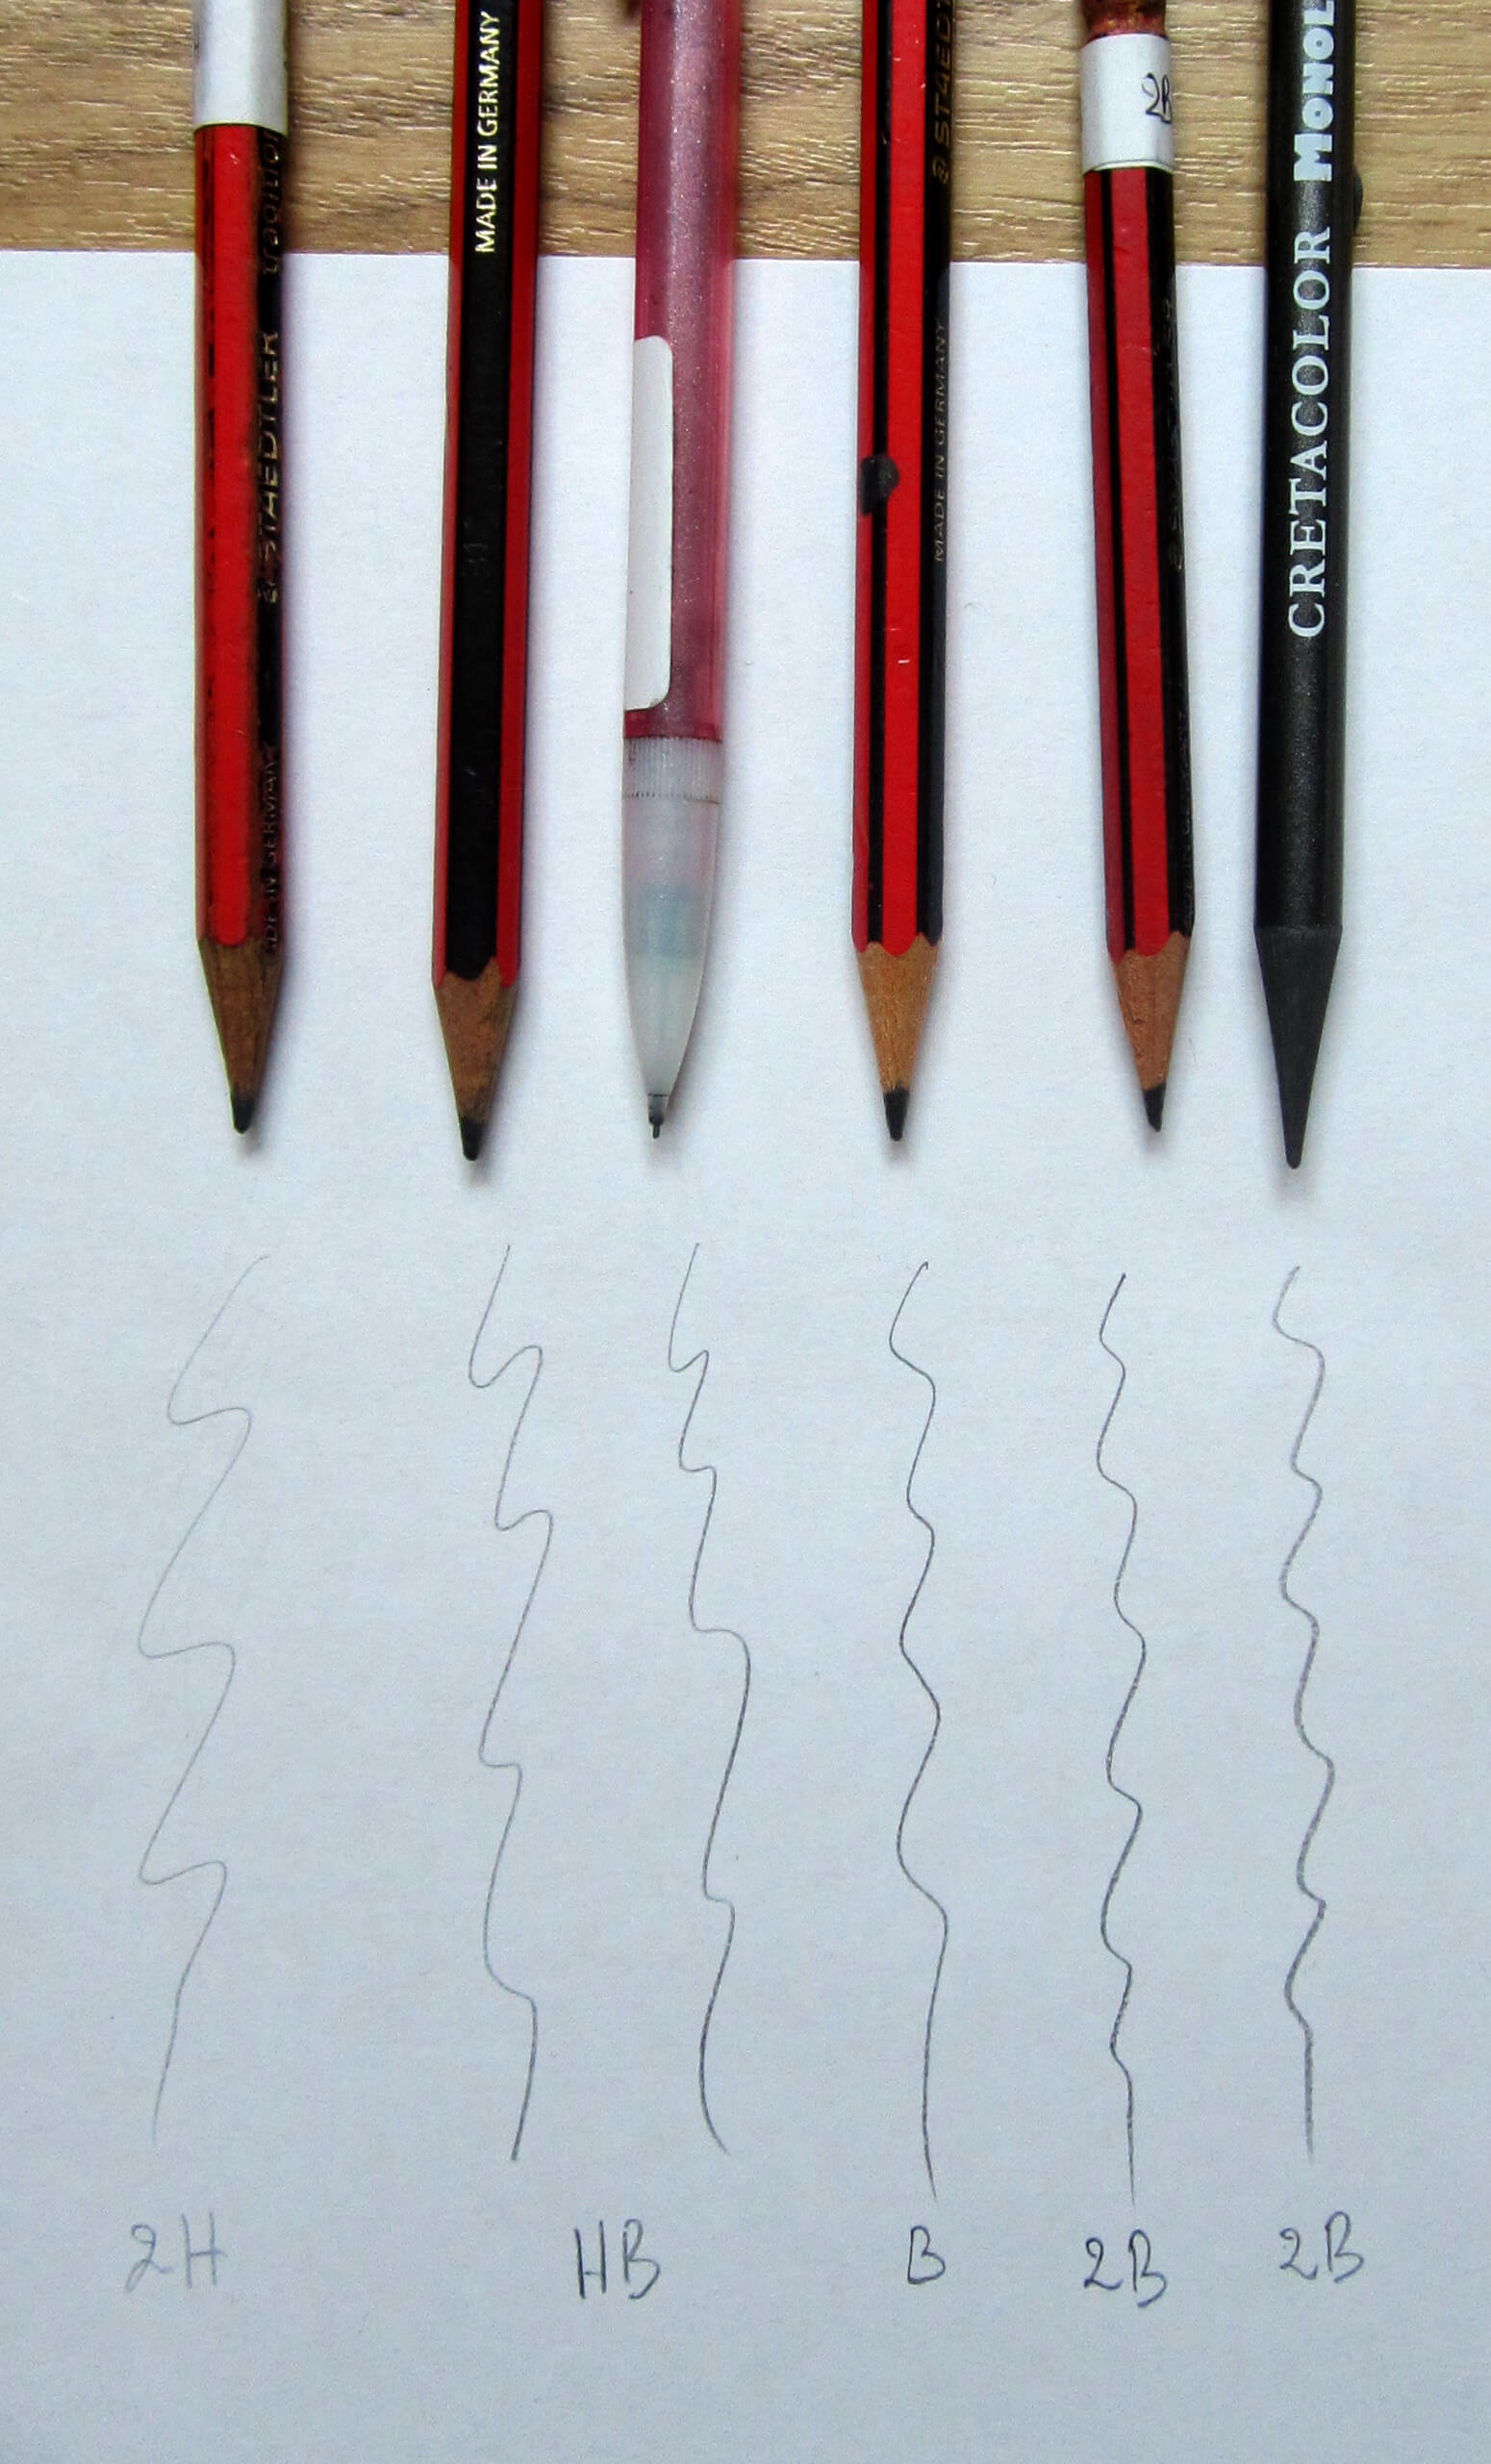 Les différents crayon pour dessiner